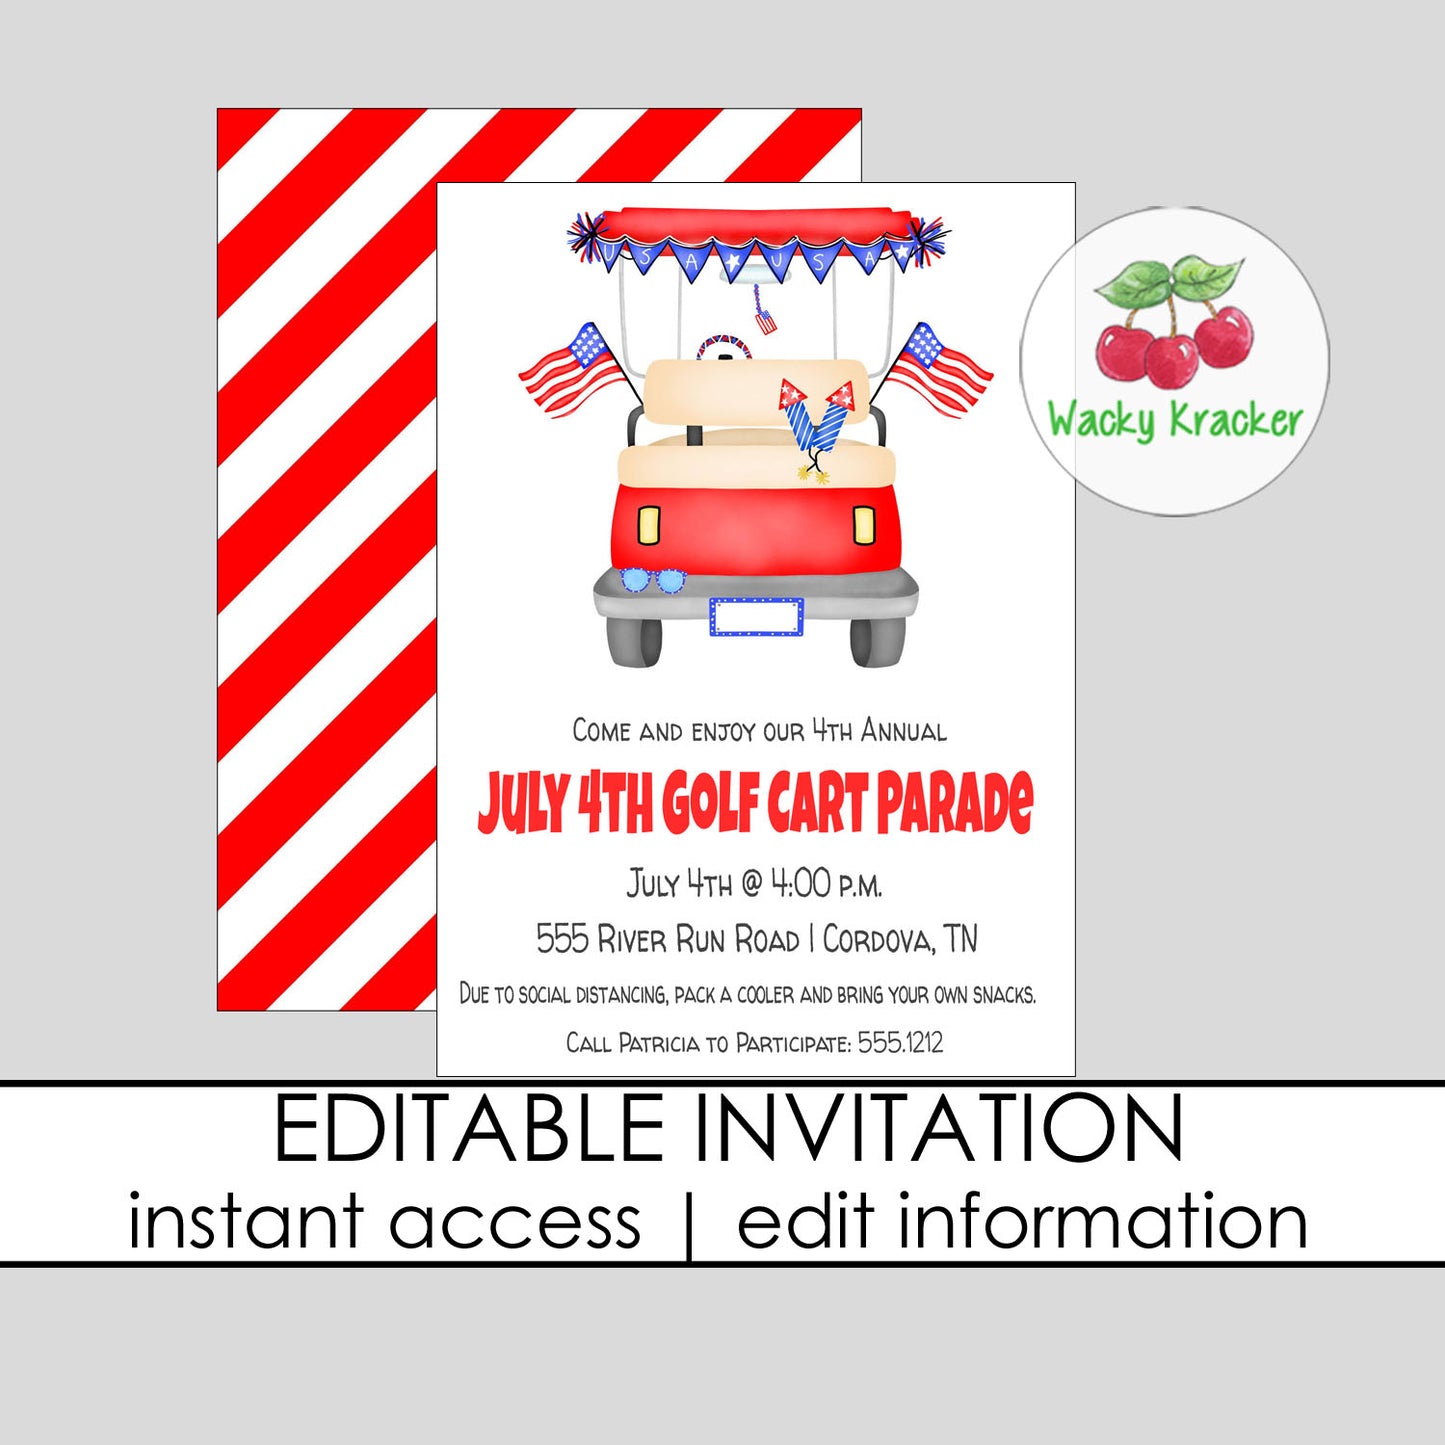 Golf Cart Parade Invitation